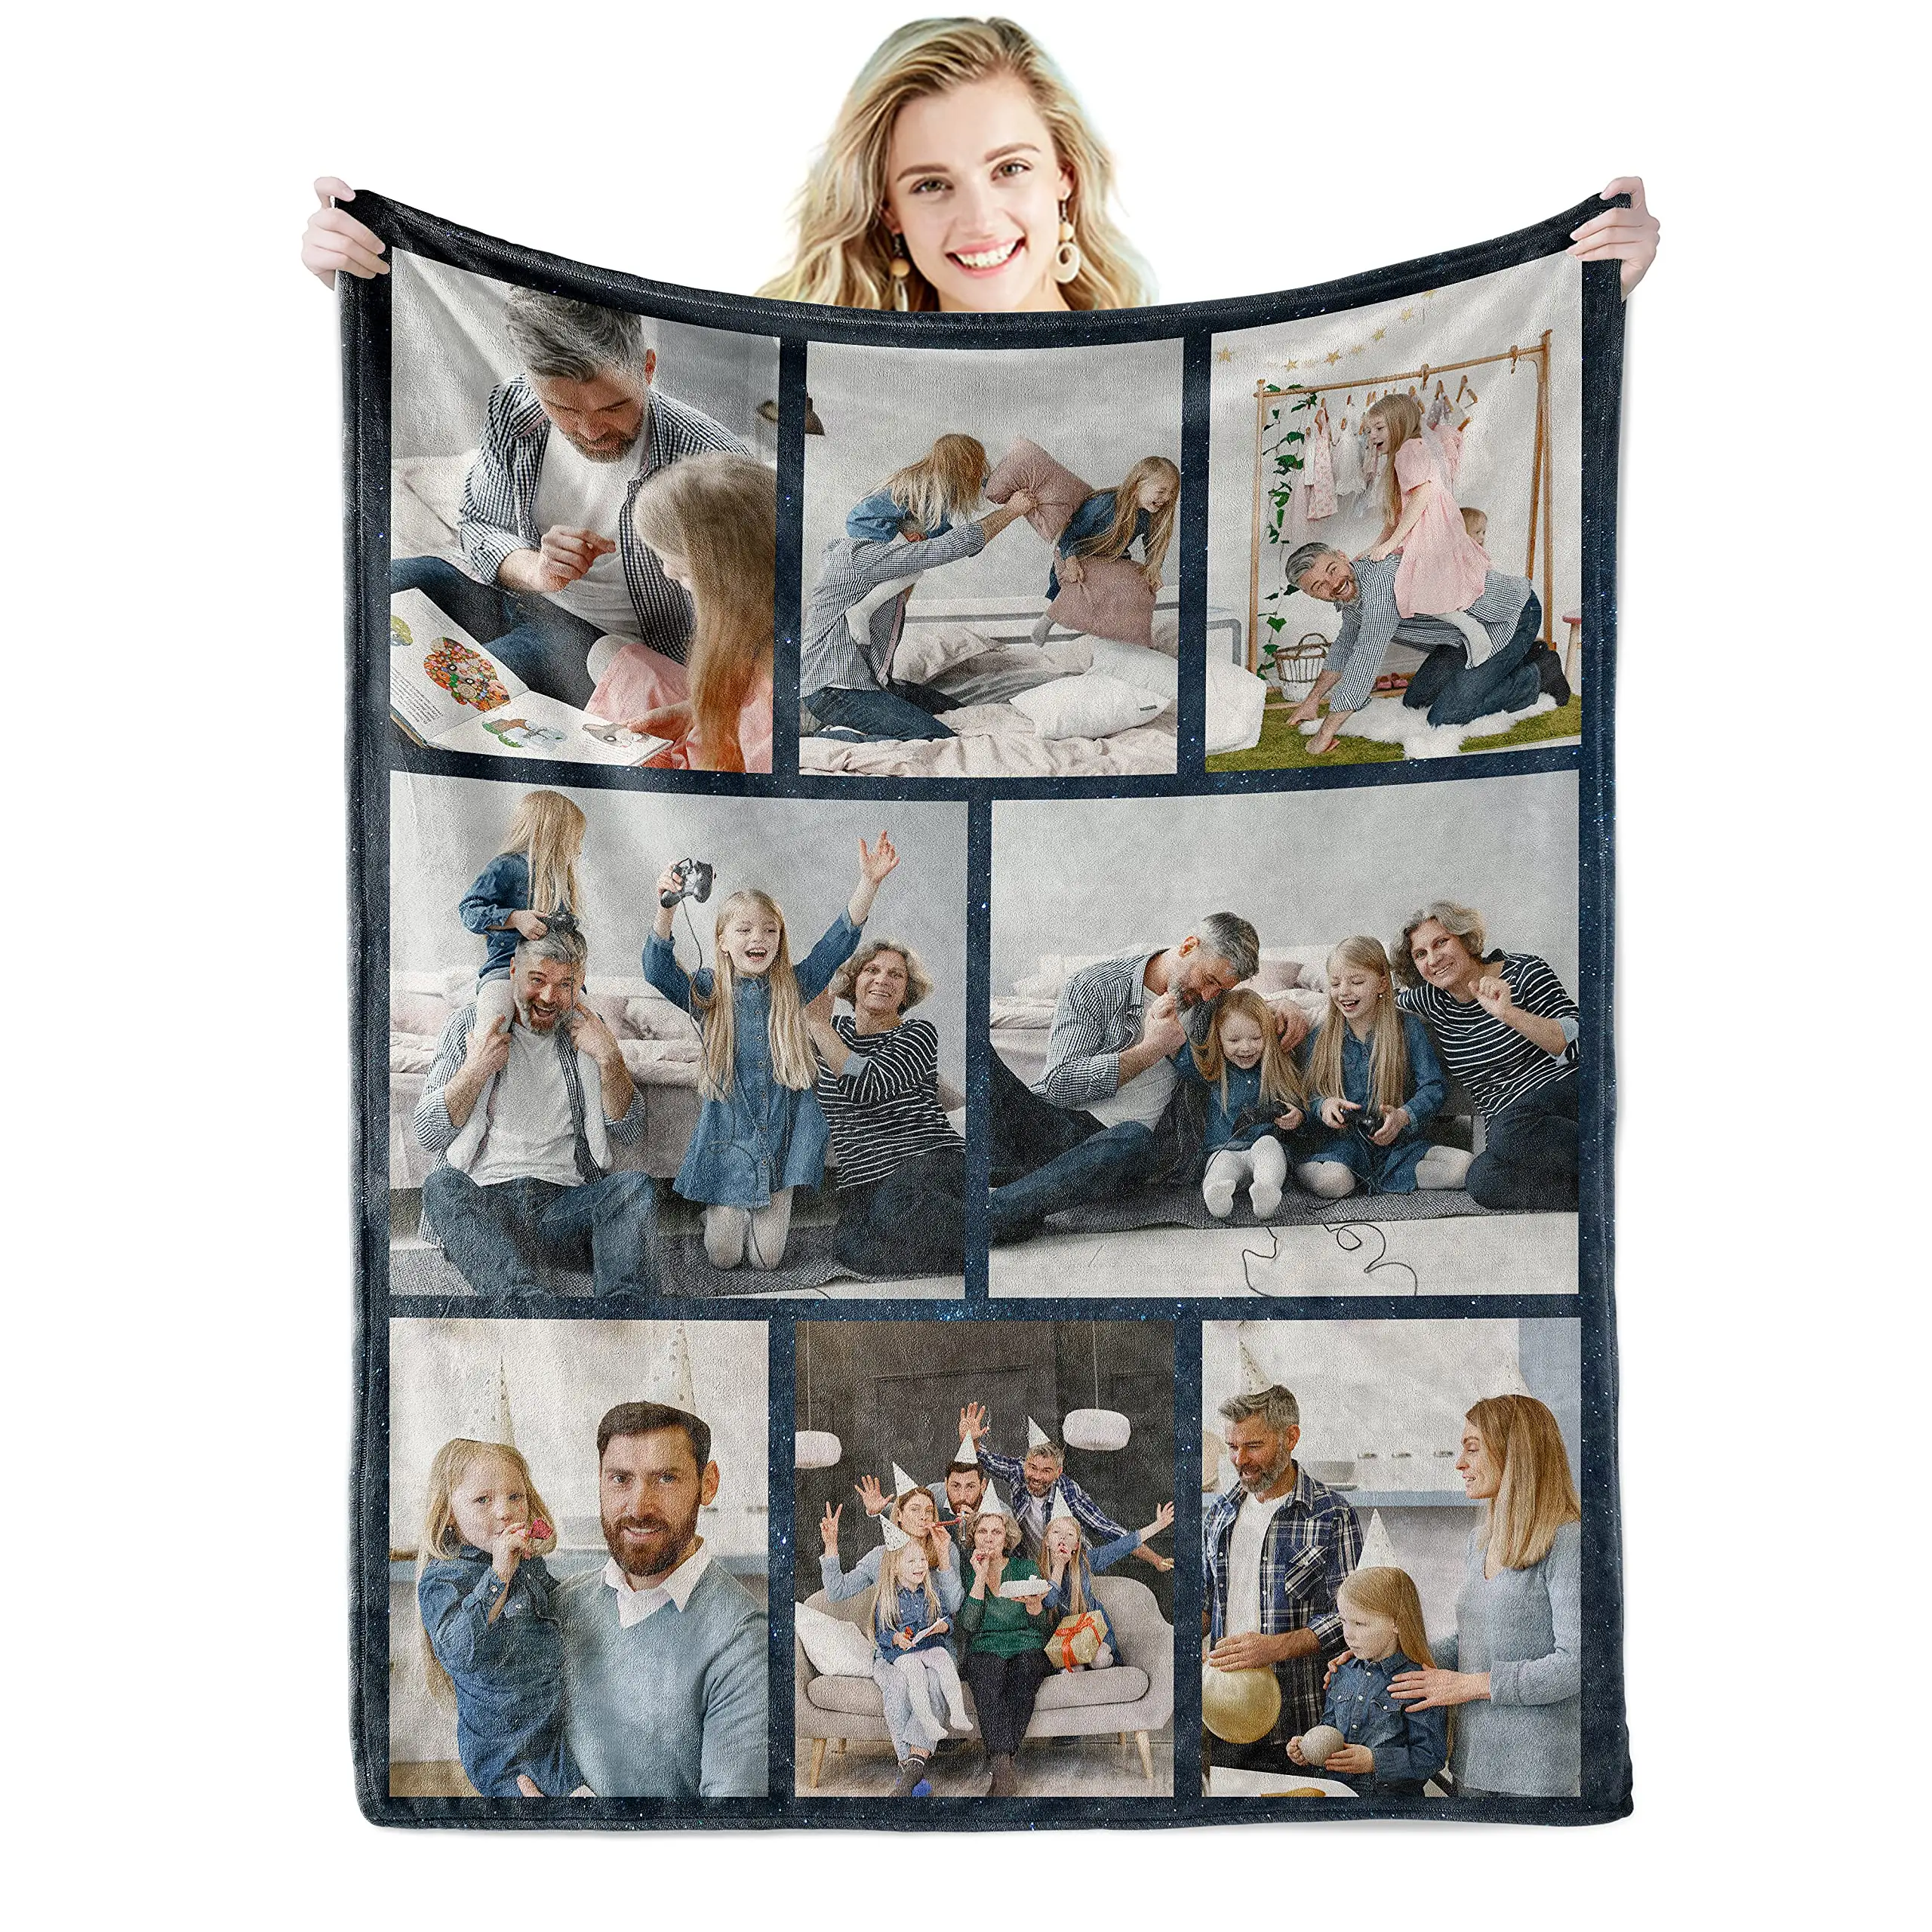 Индивидуальное одеяло с надписью и коллажем, индивидуальное одеяло s, индивидуальное одеяло для отца, мамы